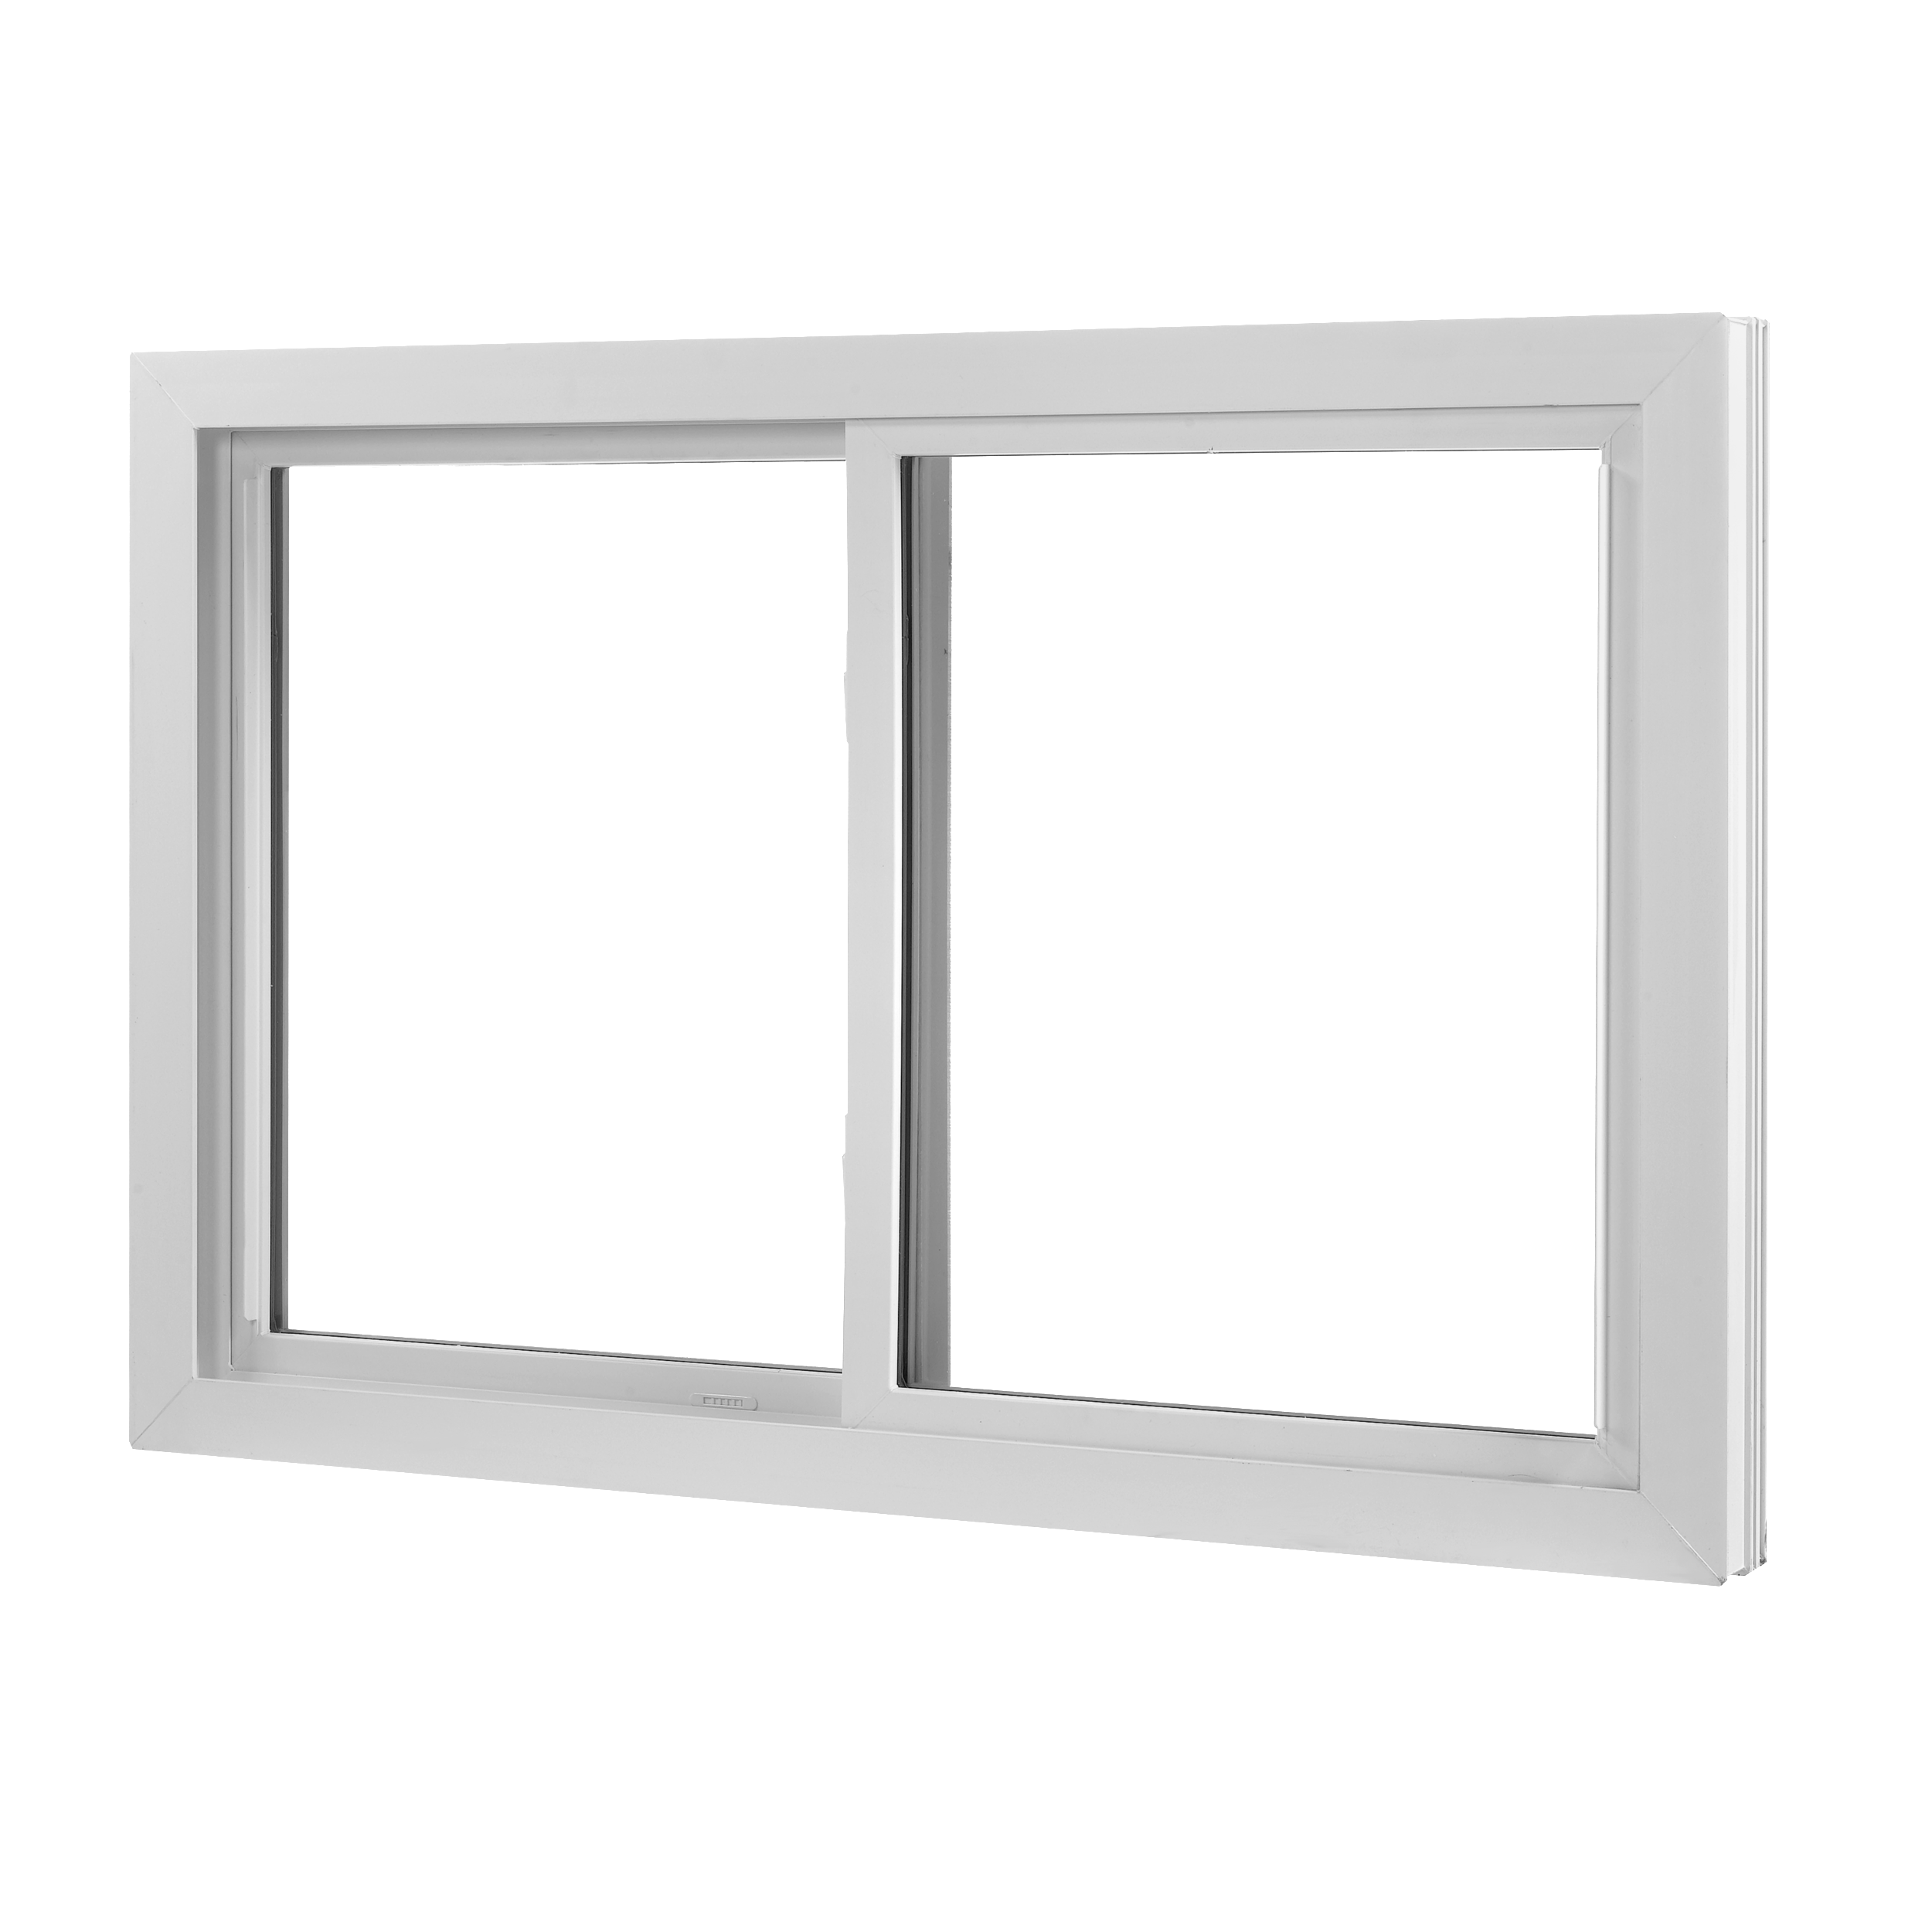 Wallside Windows Double Sliding Window